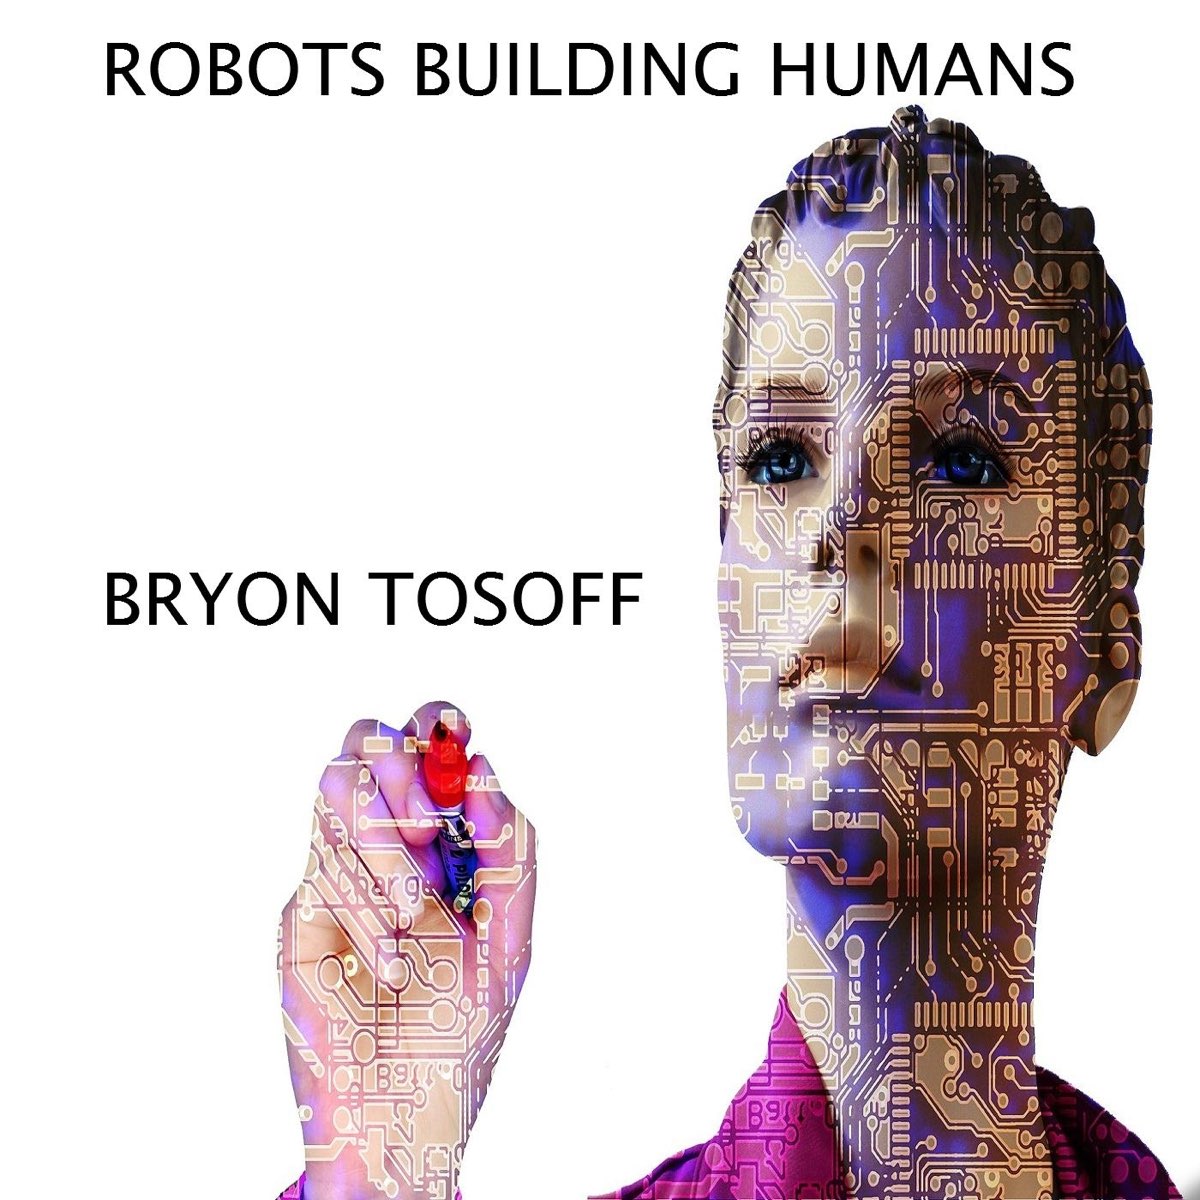 Build human